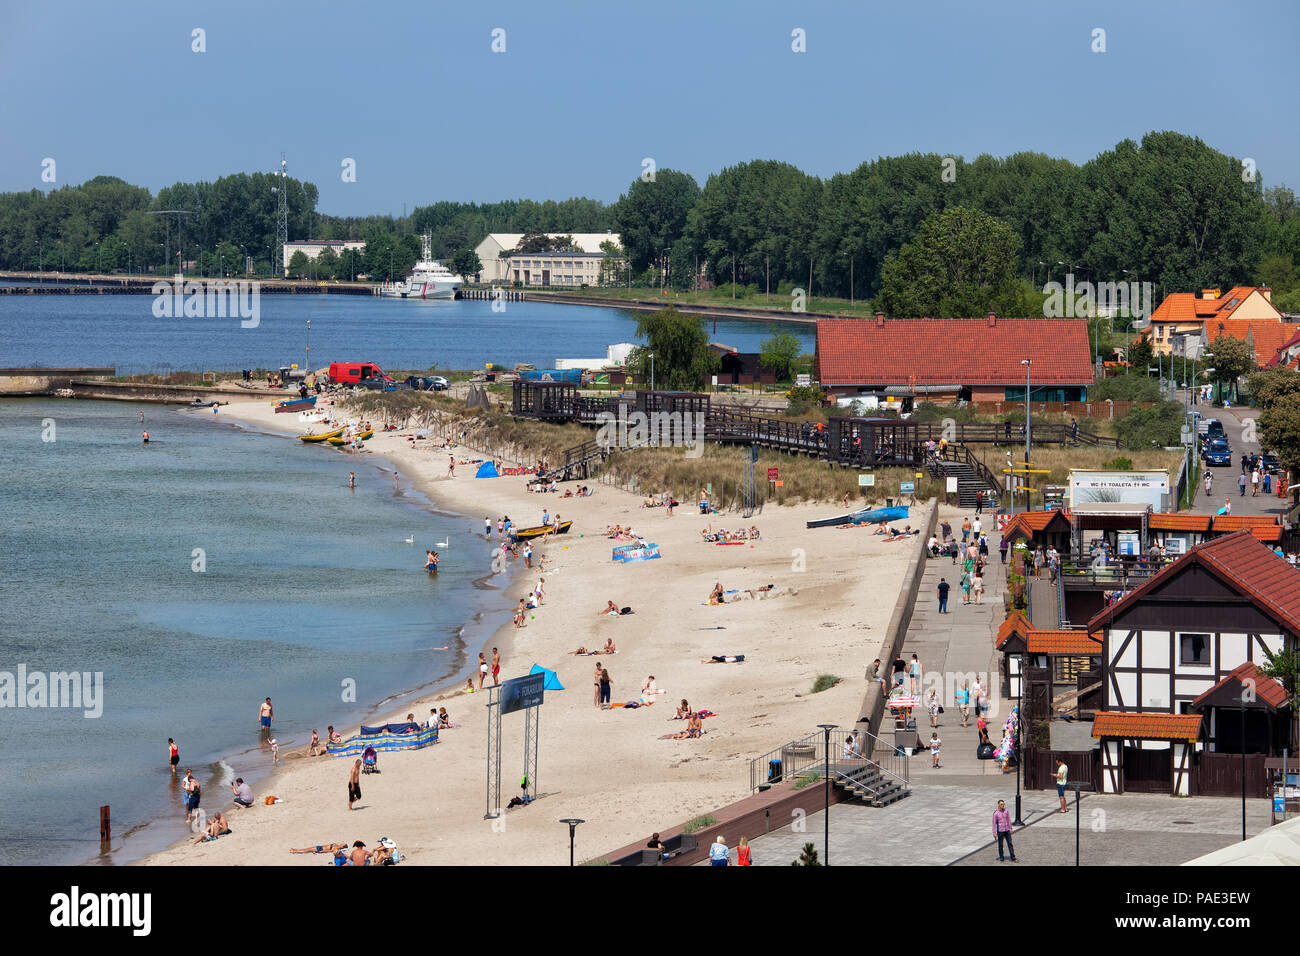 Strand in Hel Stadt auf der Halbinsel Hel in Polen, Europa